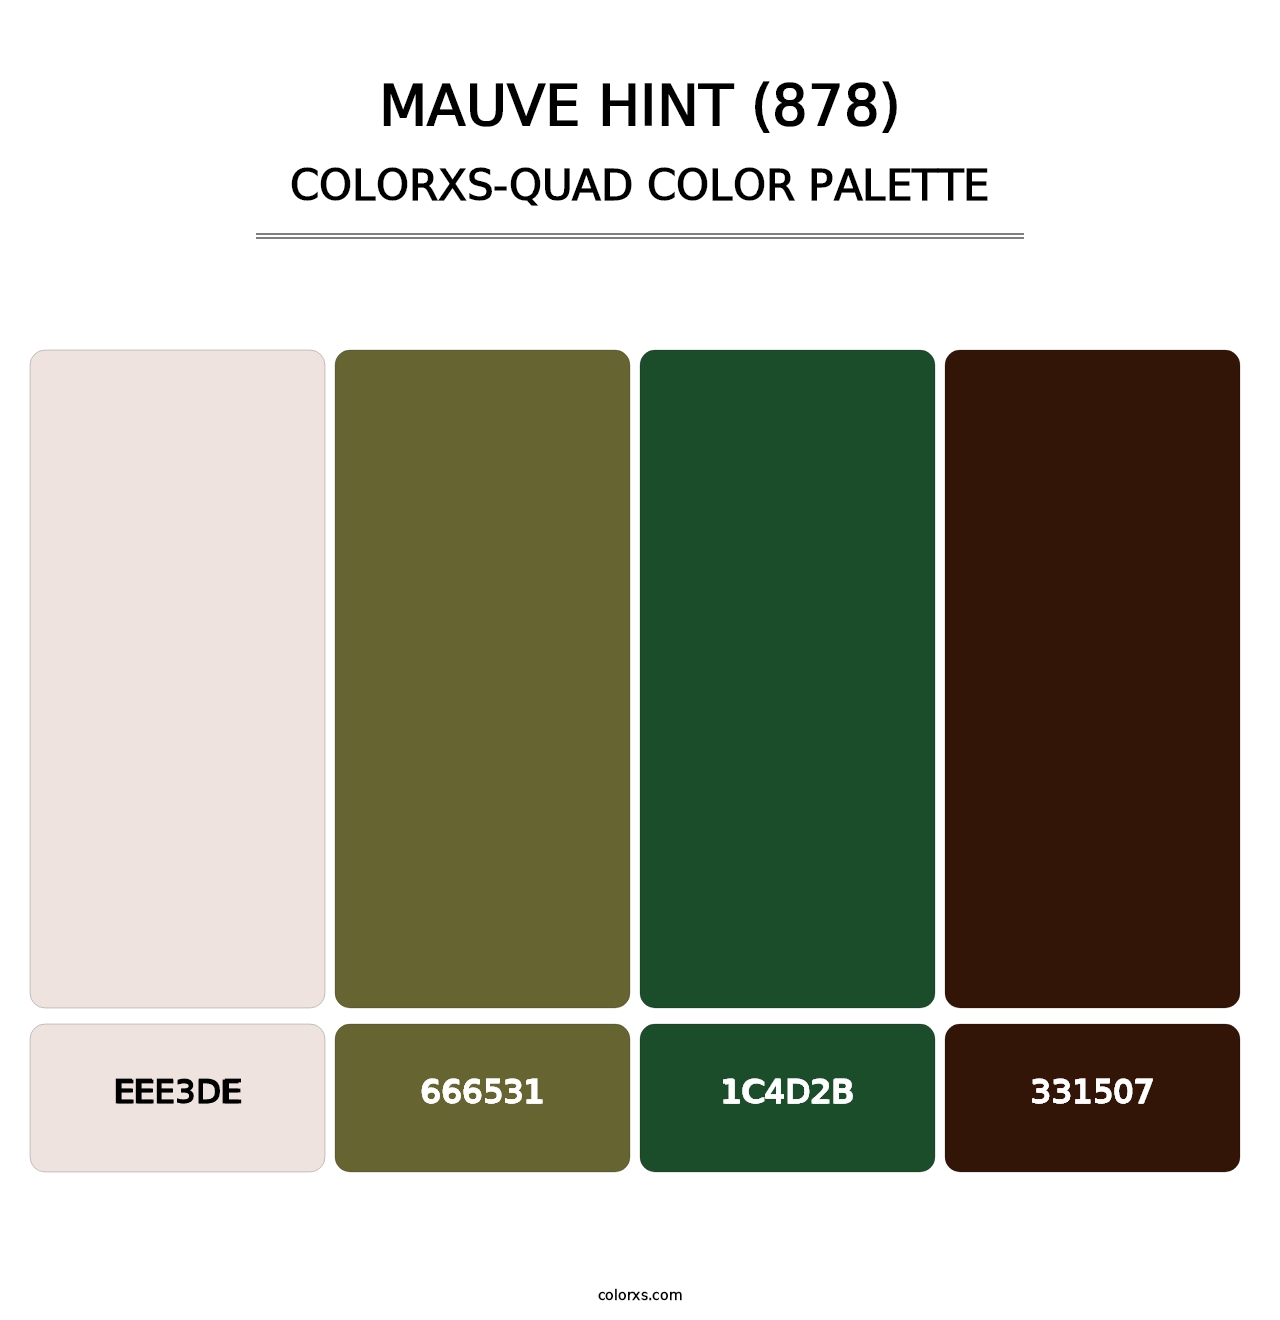 Mauve Hint (878) - Colorxs Quad Palette